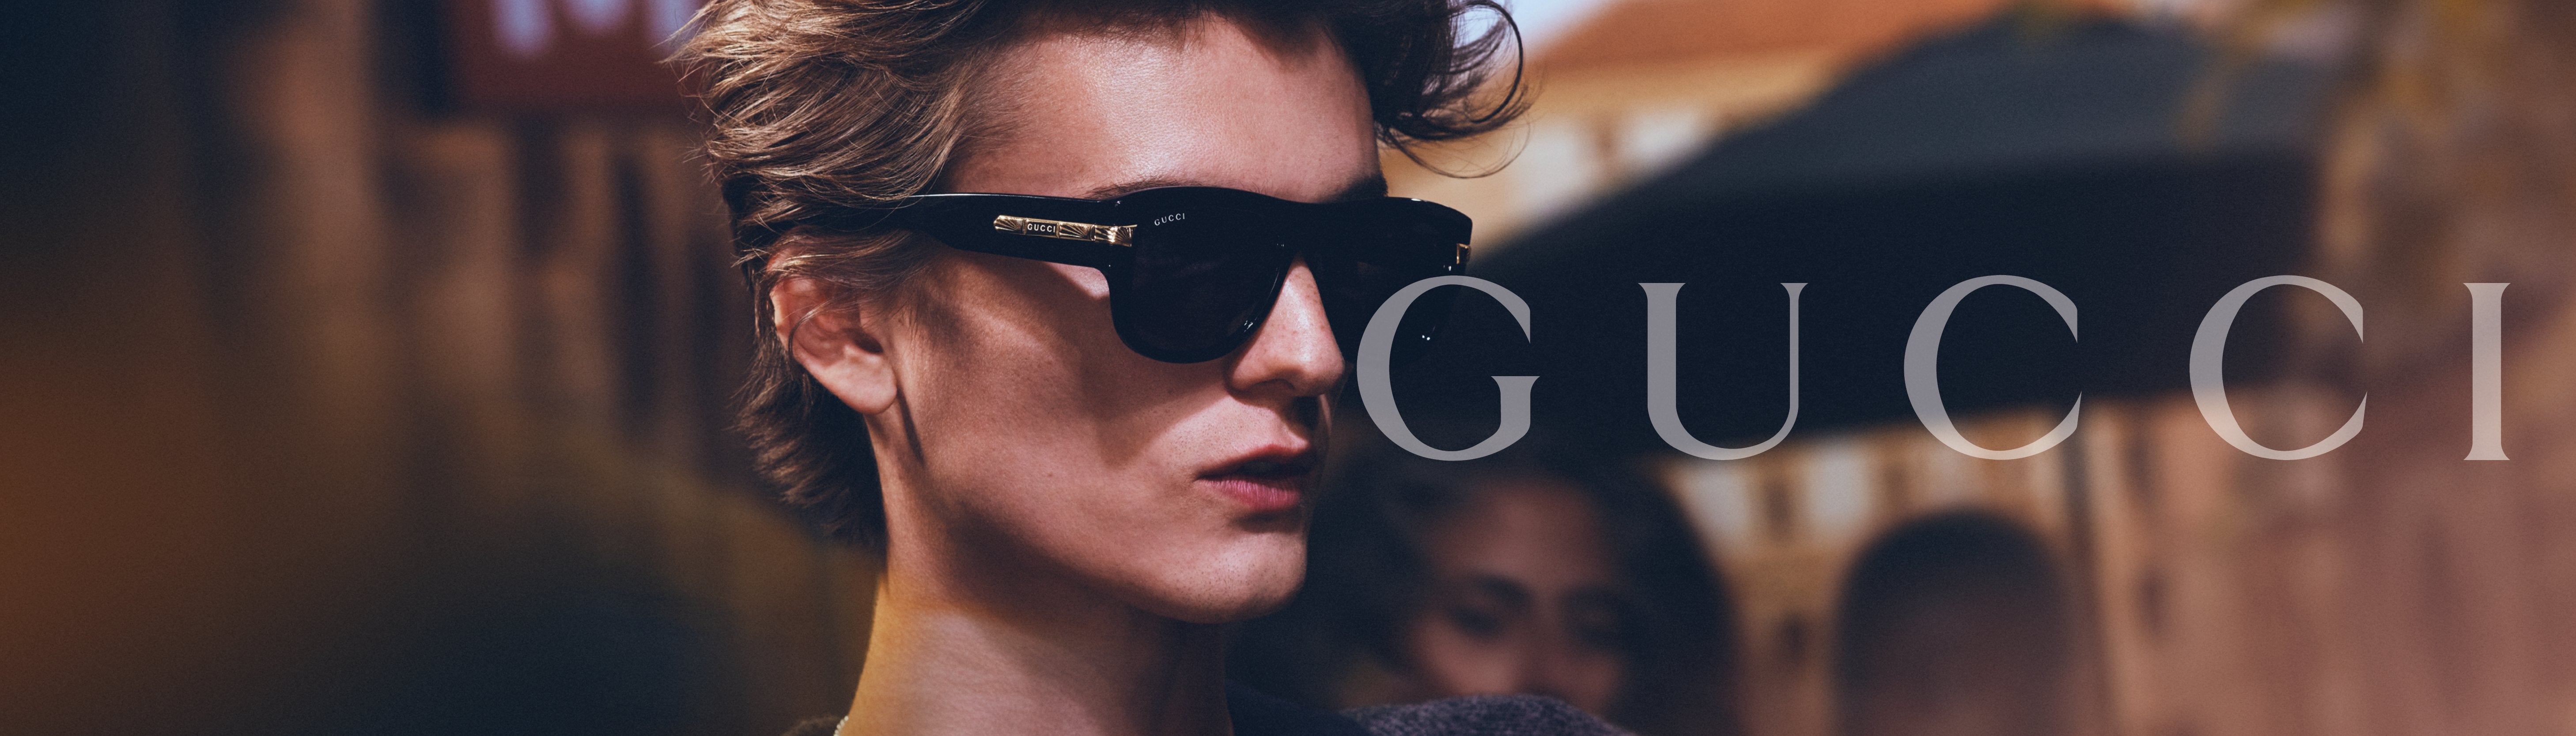 Gucci Sunglasses Black Pearl Ivory Yellow GG0255S 002 59 17 150 - Gucci  sunglasses - | Fash Brands